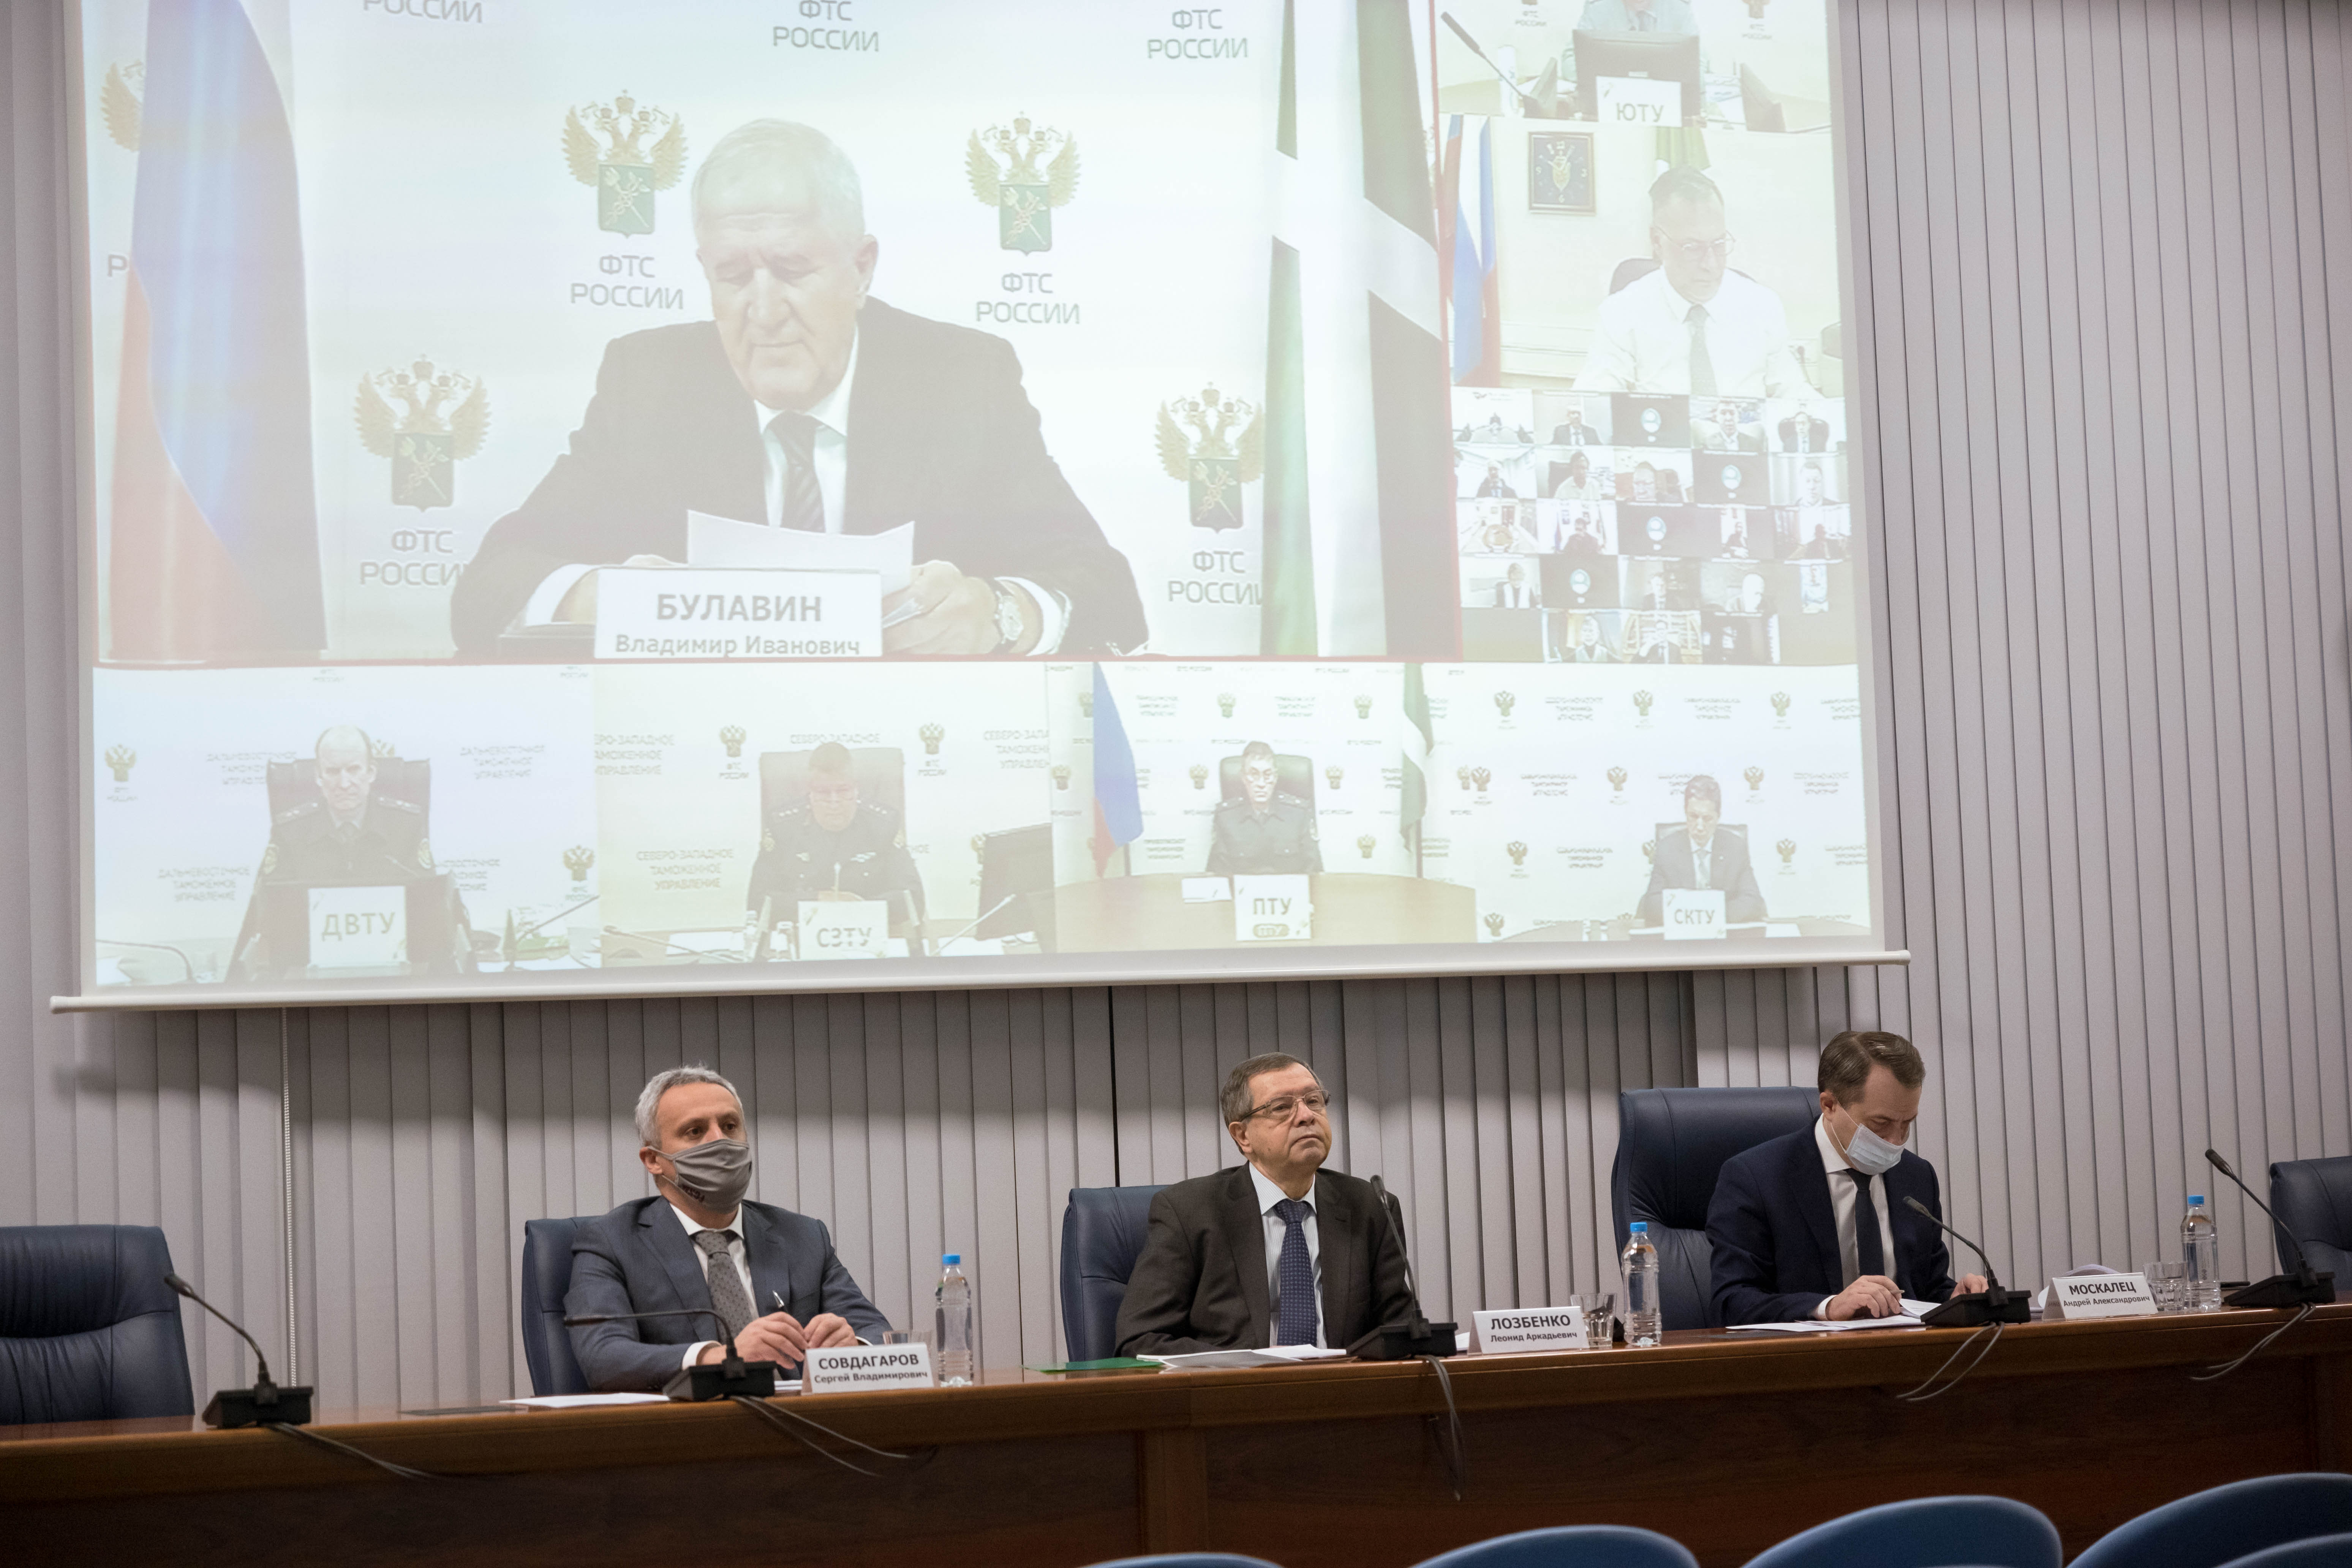 23 декабря состоялось заседание Общественного совета при ФТС России, на котором были подведены итоги работы в уходящем году и обозначены задачи на 2022 год с учетом рекомендаций Общественной палаты РФ.